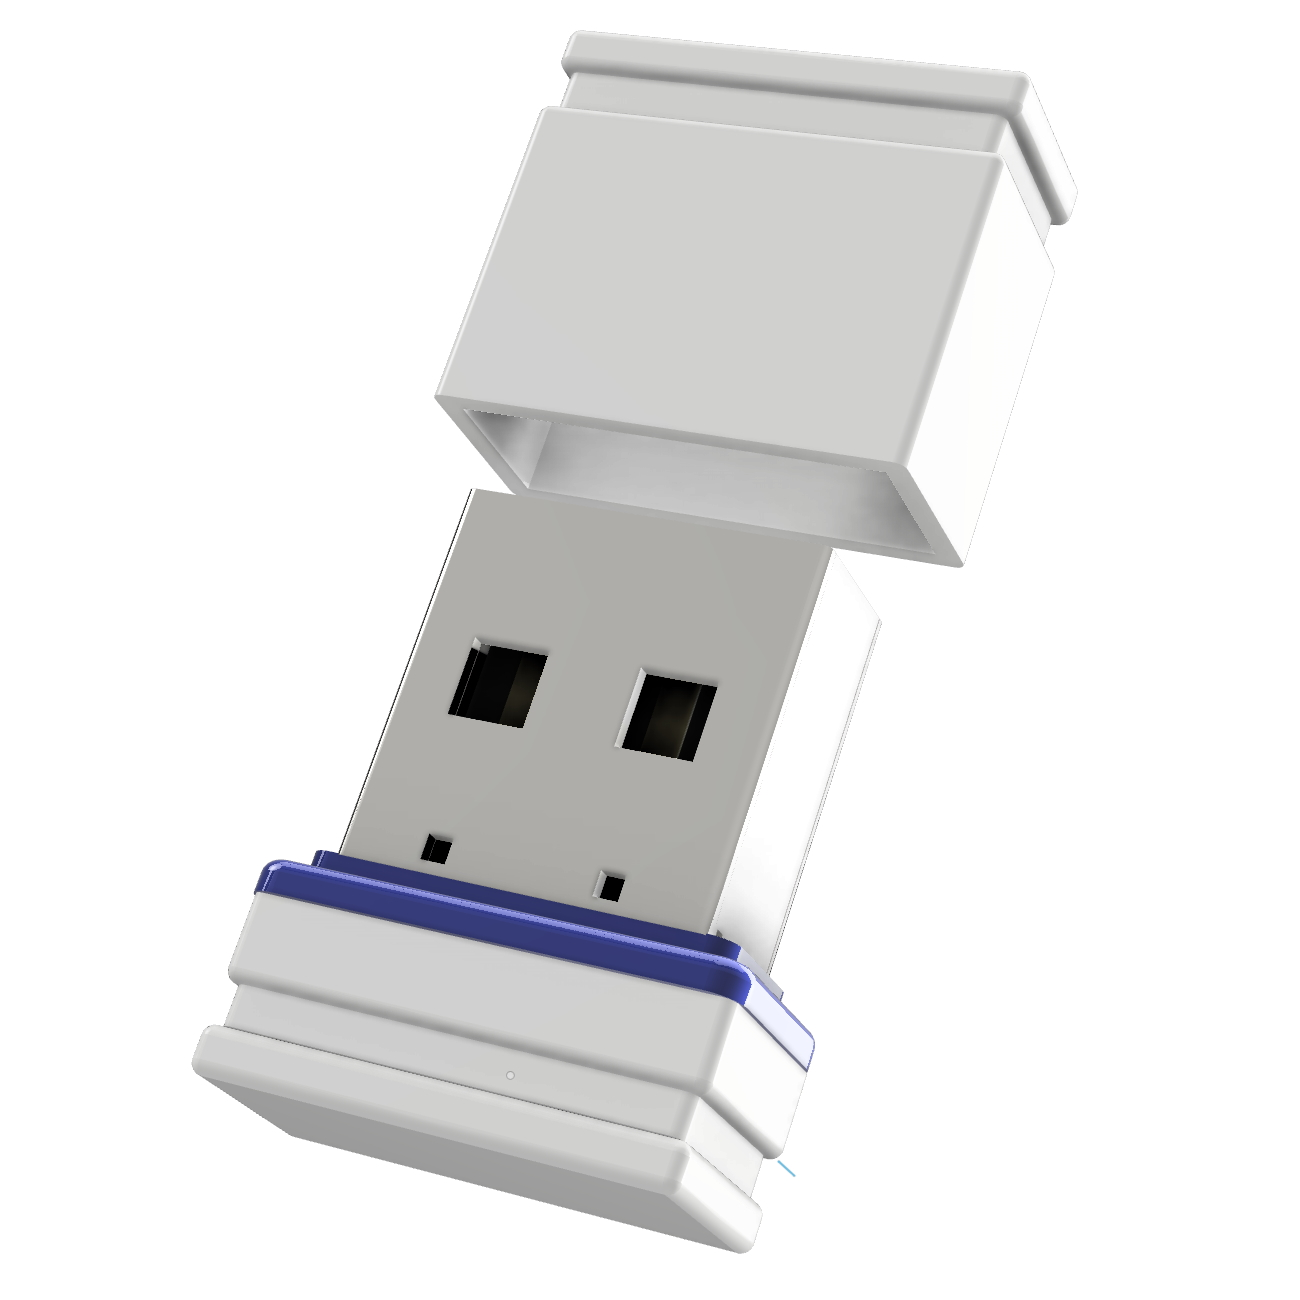 32 GB) (Weiss/Blau, Mini P1 USB ®ULTRA USB-Stick GERMANY